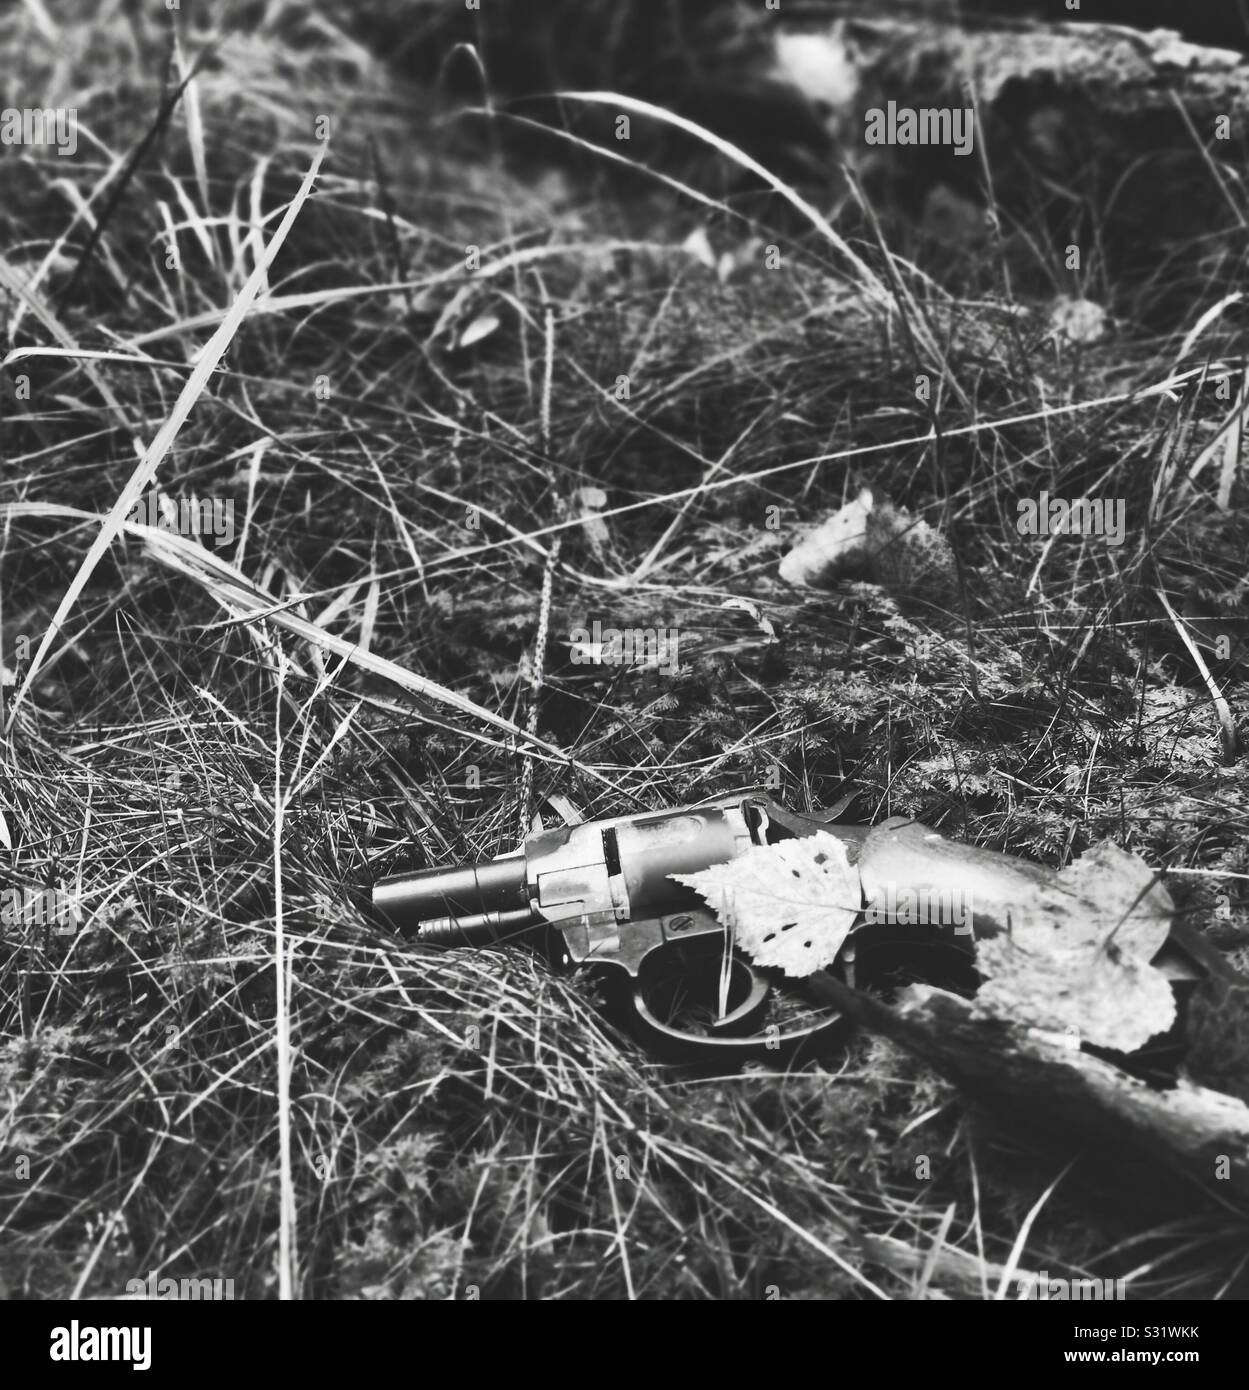 Black and white image of gun pistol abandoned on forest floor amongst leaves Stock Photo